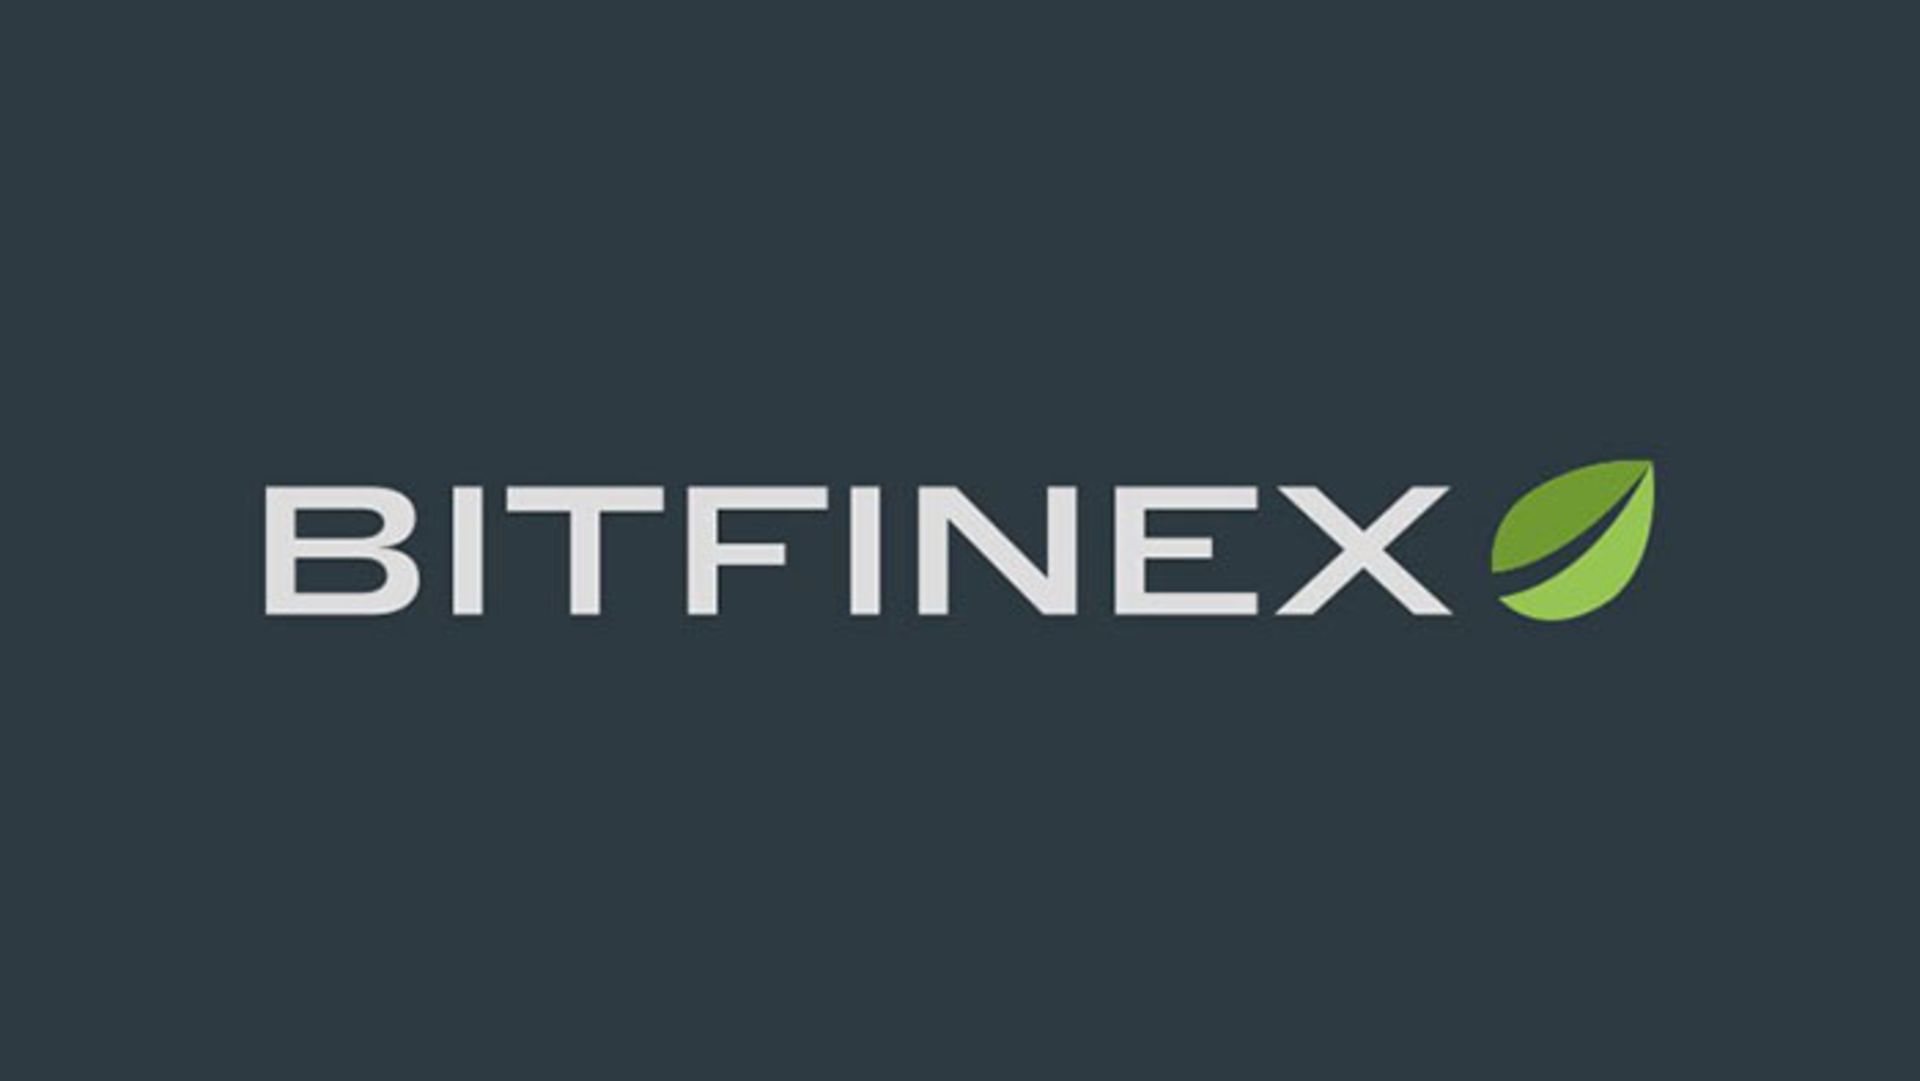 بیت فینکس / Bitfinex